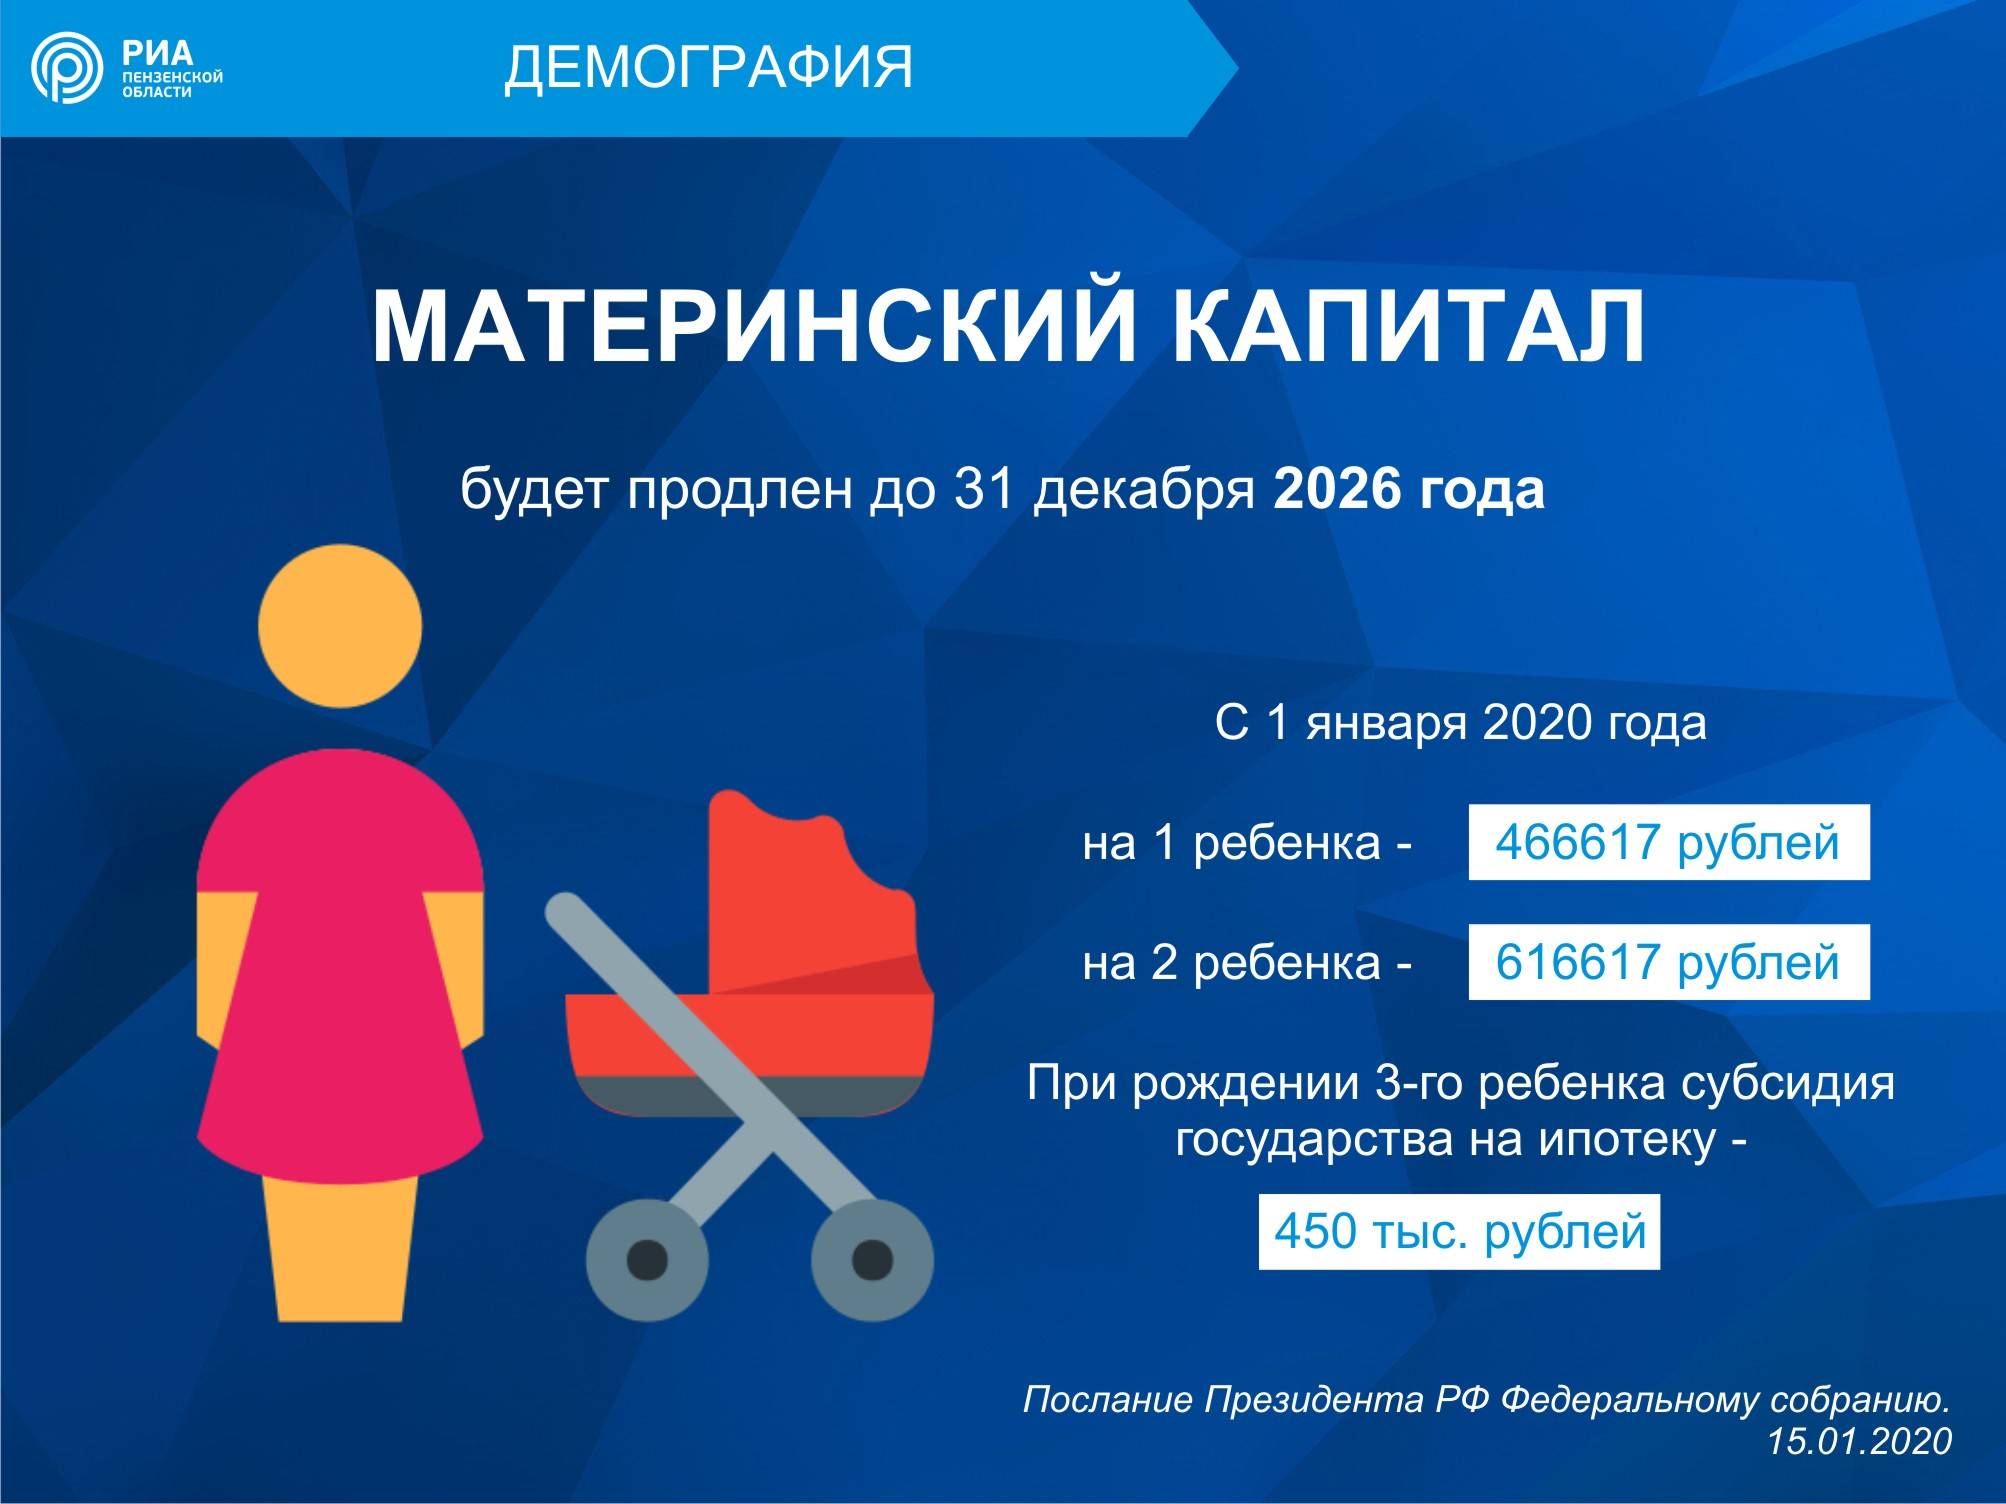 Материнский капитал на третьего ребенка в россии. Материнский капитал в 2020. Мат капитал в 2020 году размер. Сумма материнского капитала на второго ребенка в 2020 году. Сумма мат капитала в 2020.